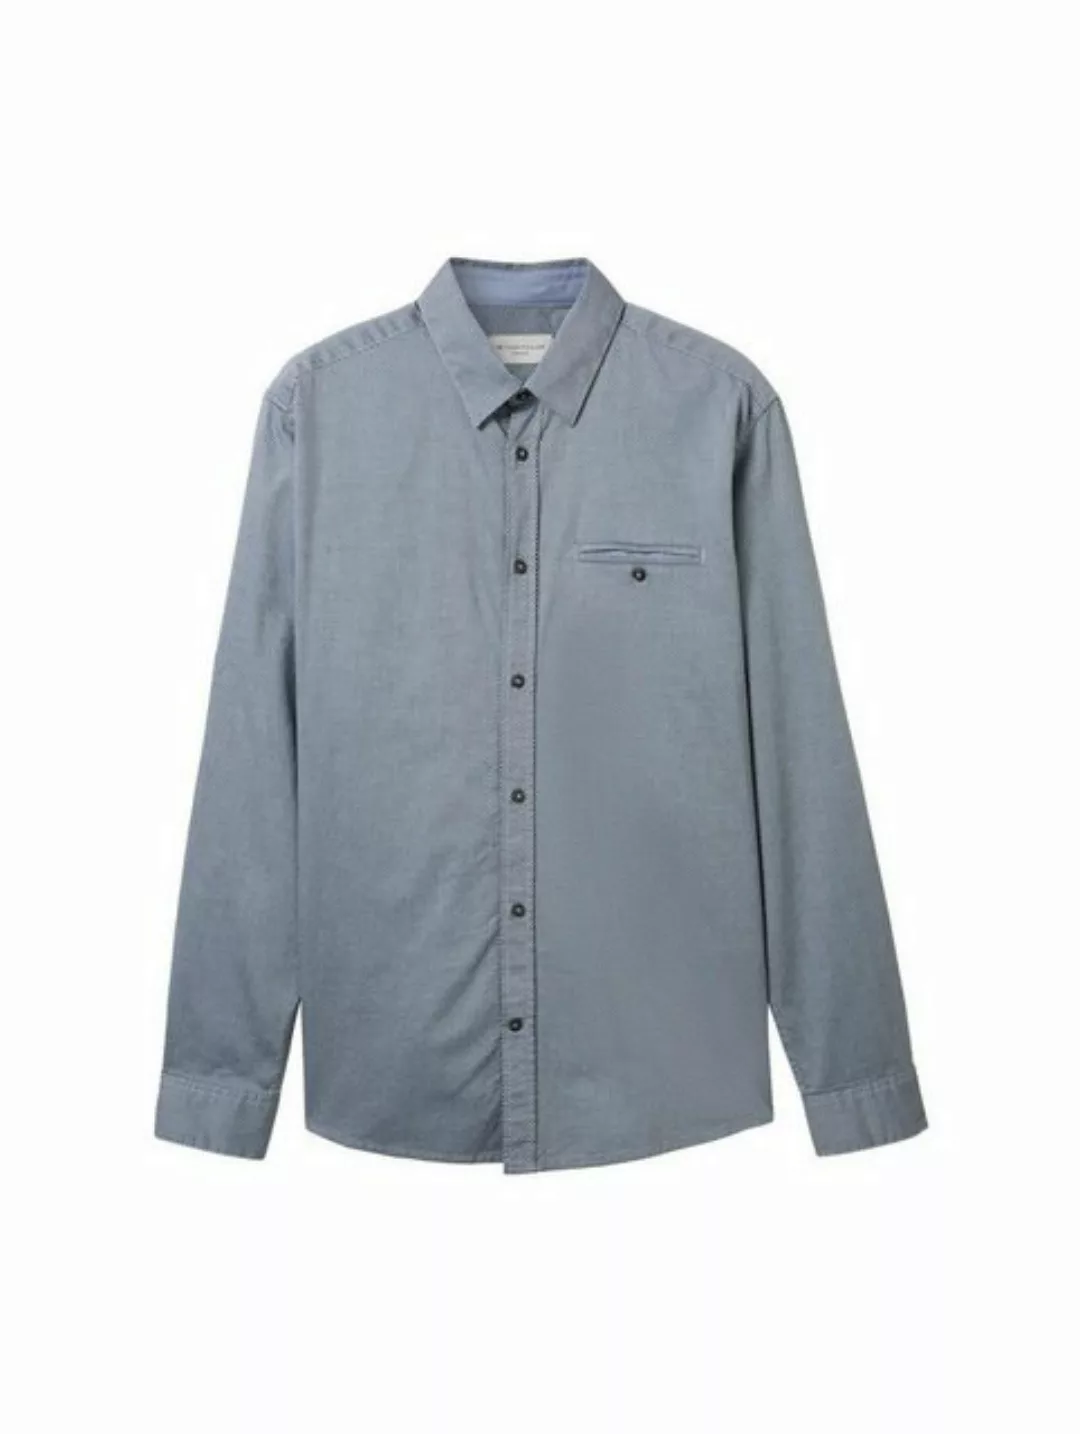 TOM TAILOR T-Shirt structured shirt, navy blue small structure günstig online kaufen